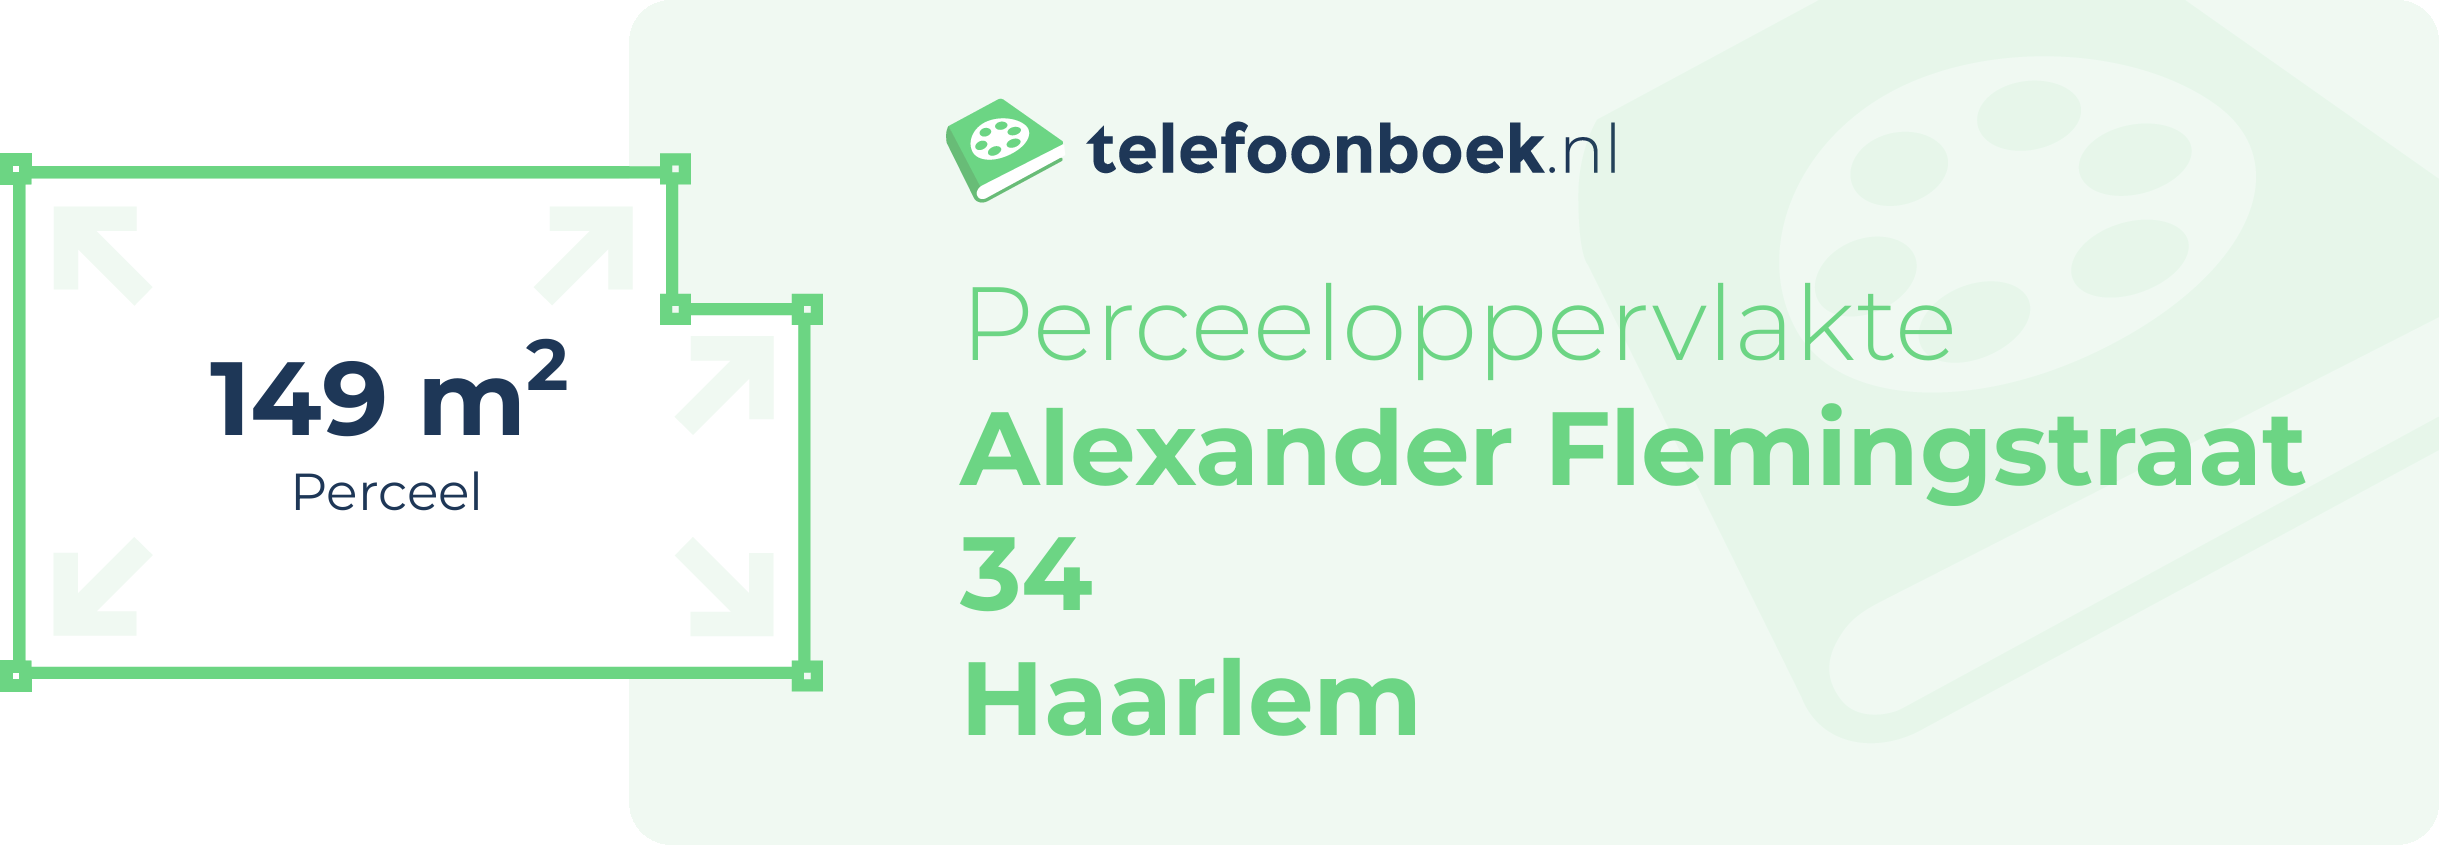 Perceeloppervlakte Alexander Flemingstraat 34 Haarlem